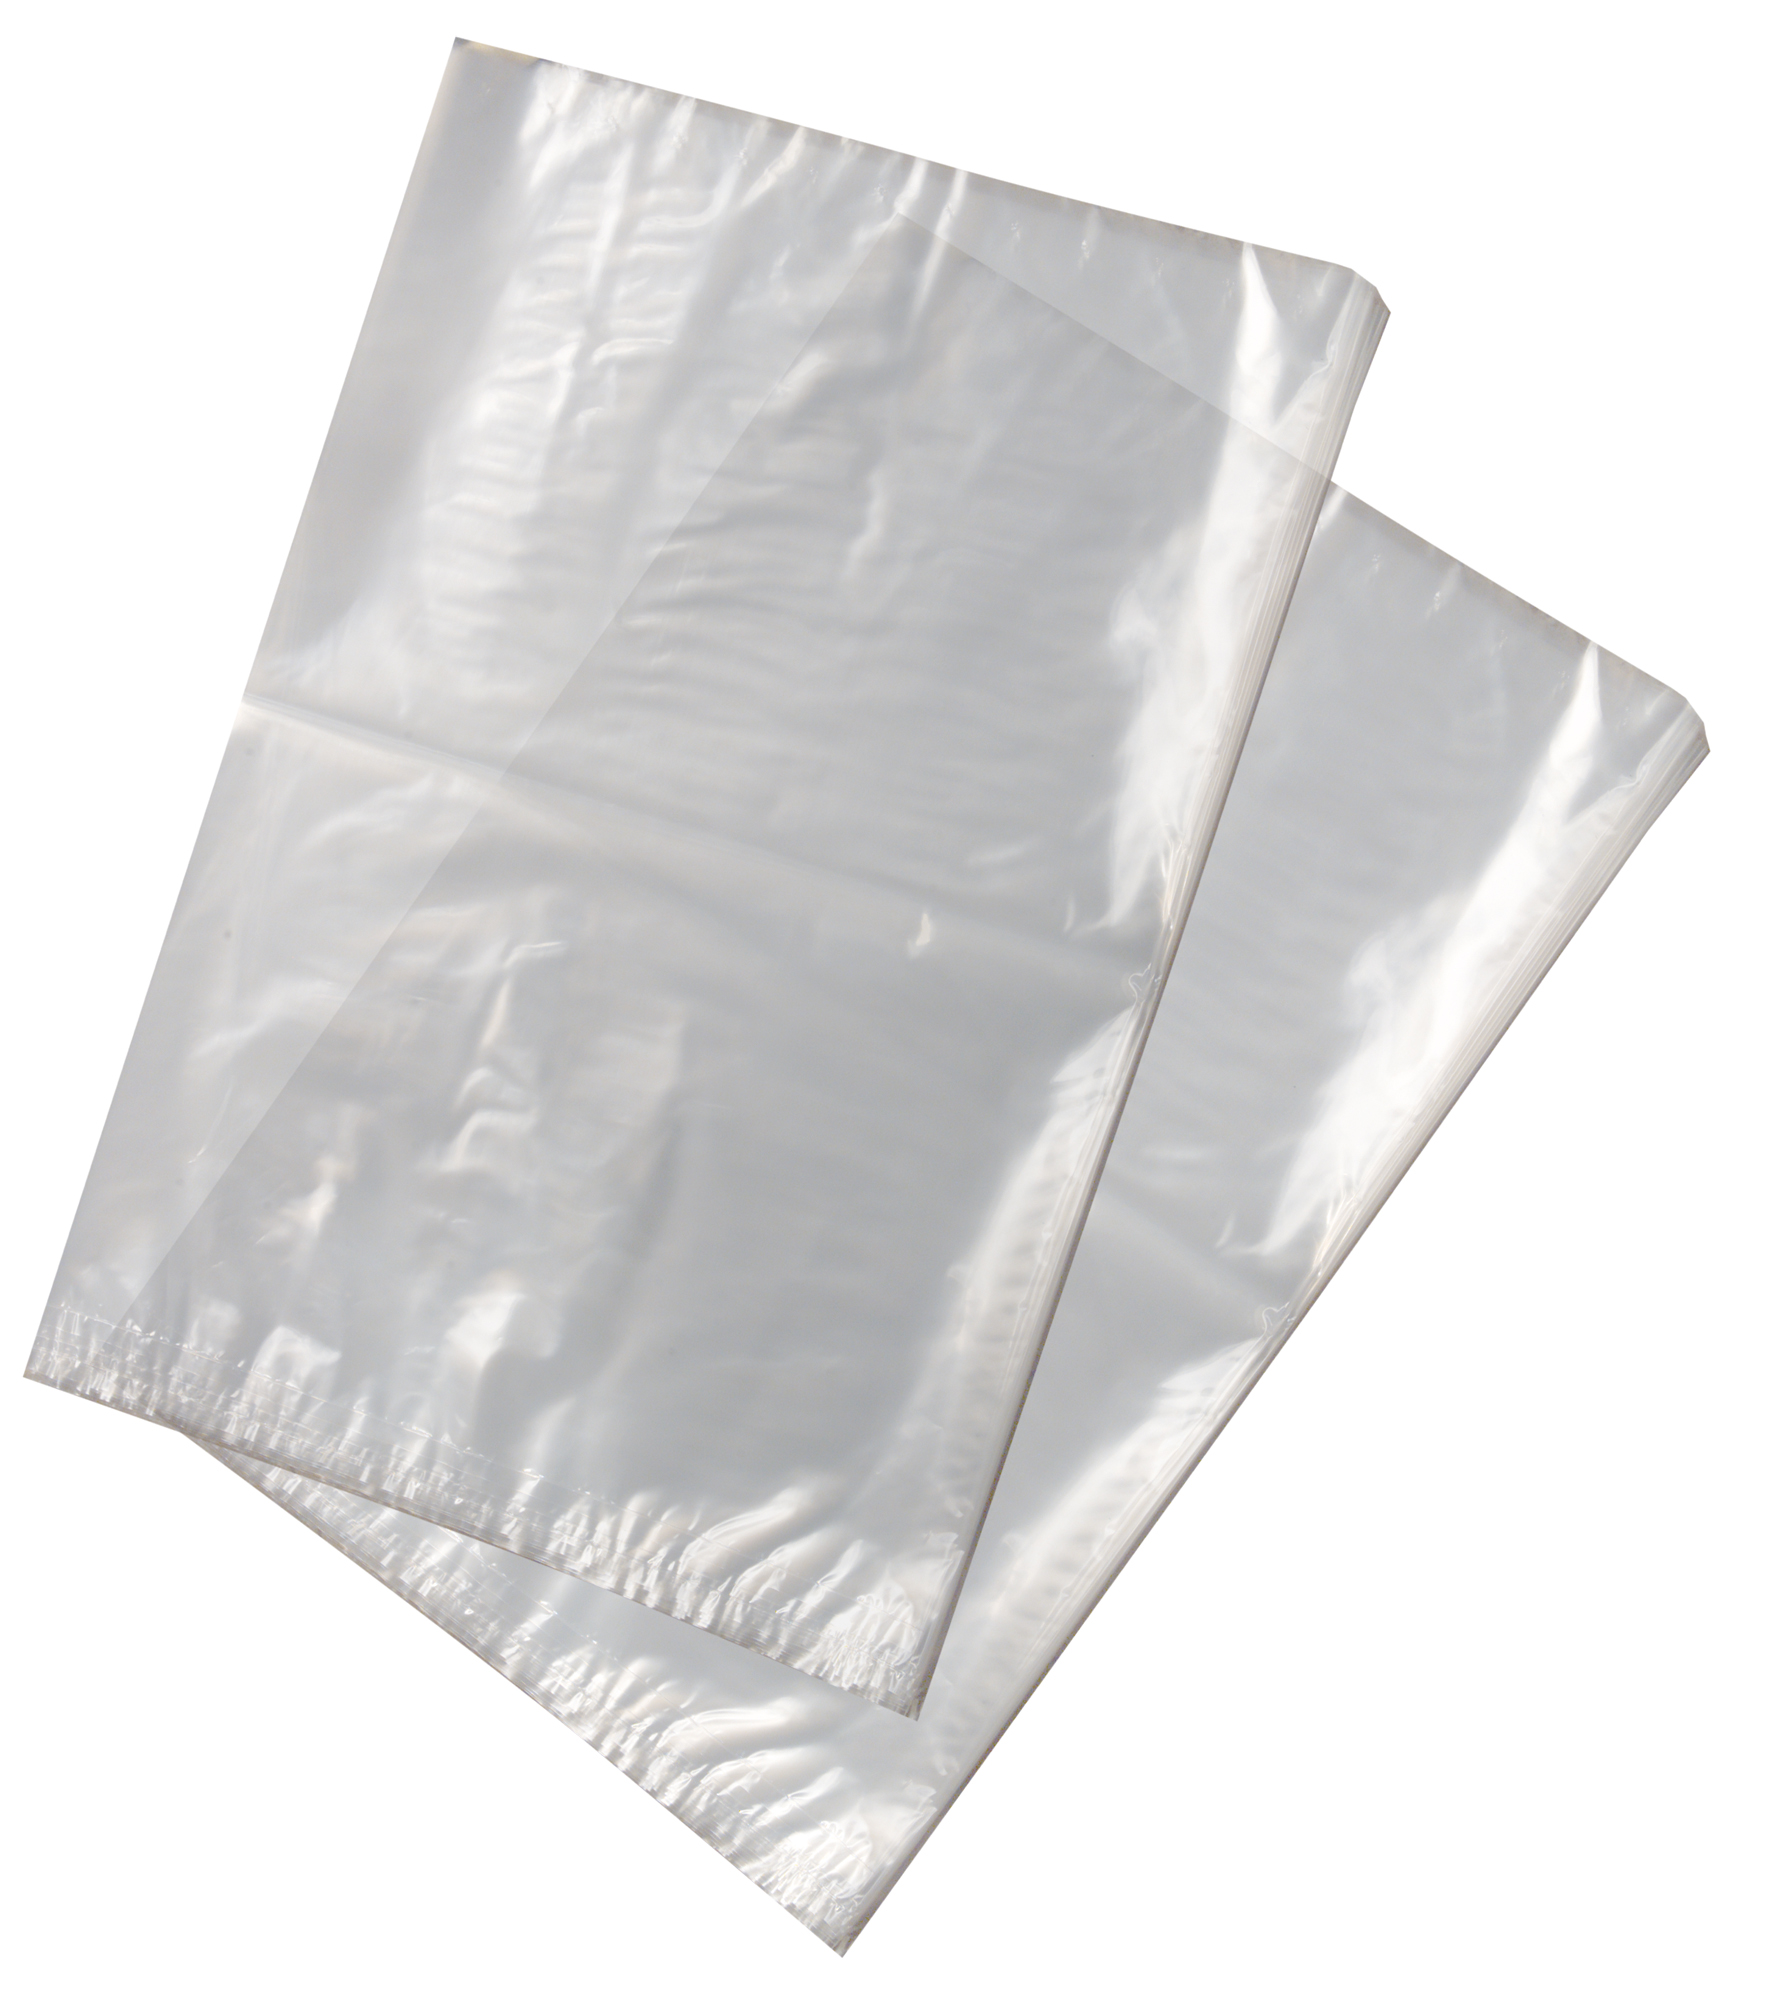 Herrenmonogrammtaschentücher 2X3 im Foliebeutel verpackt,weiß mit farbigem Rand 